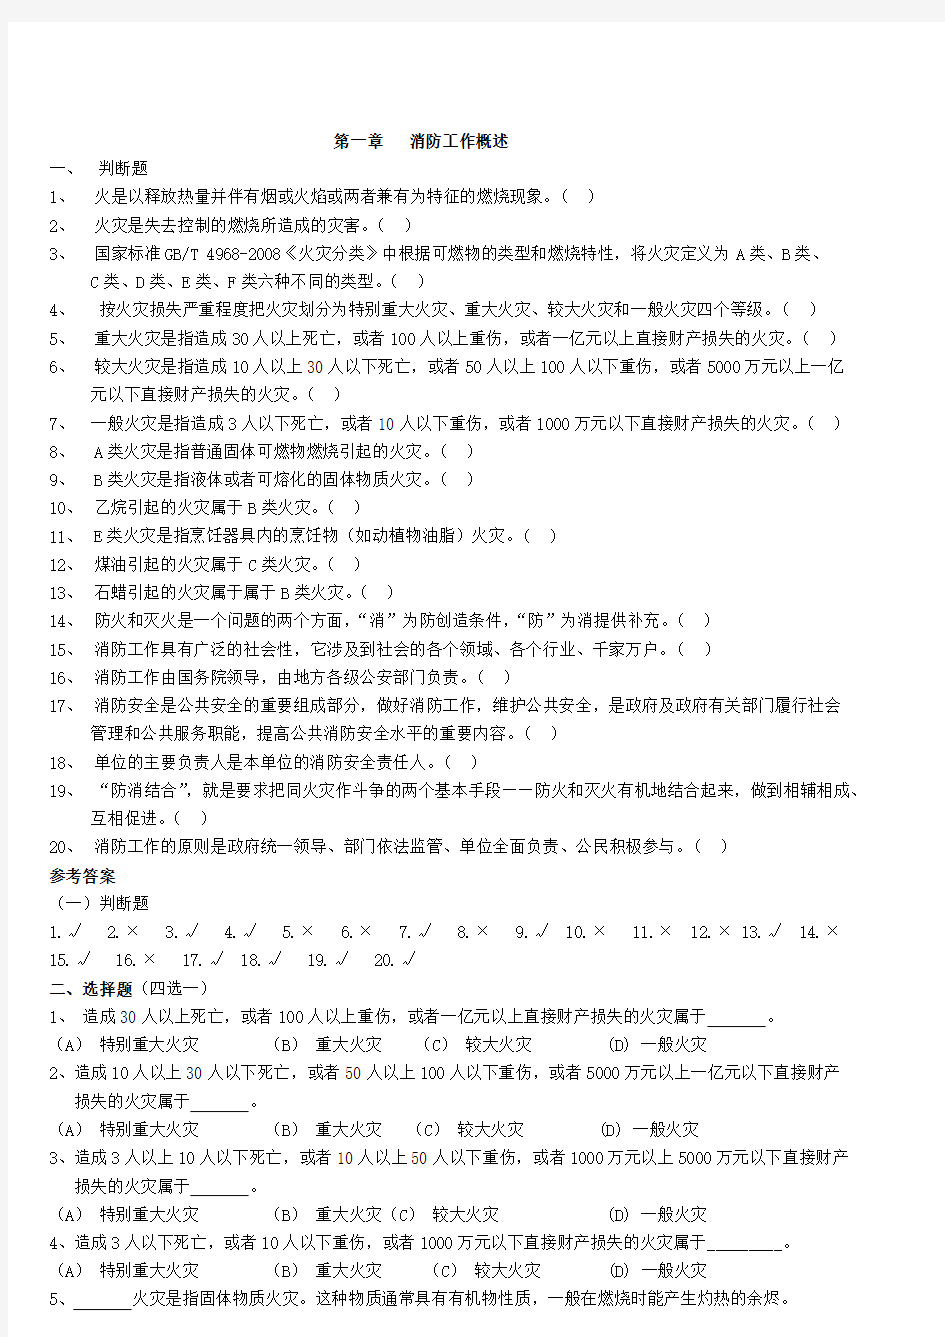 初级建构筑物消防员理论考试习题集(附答案).